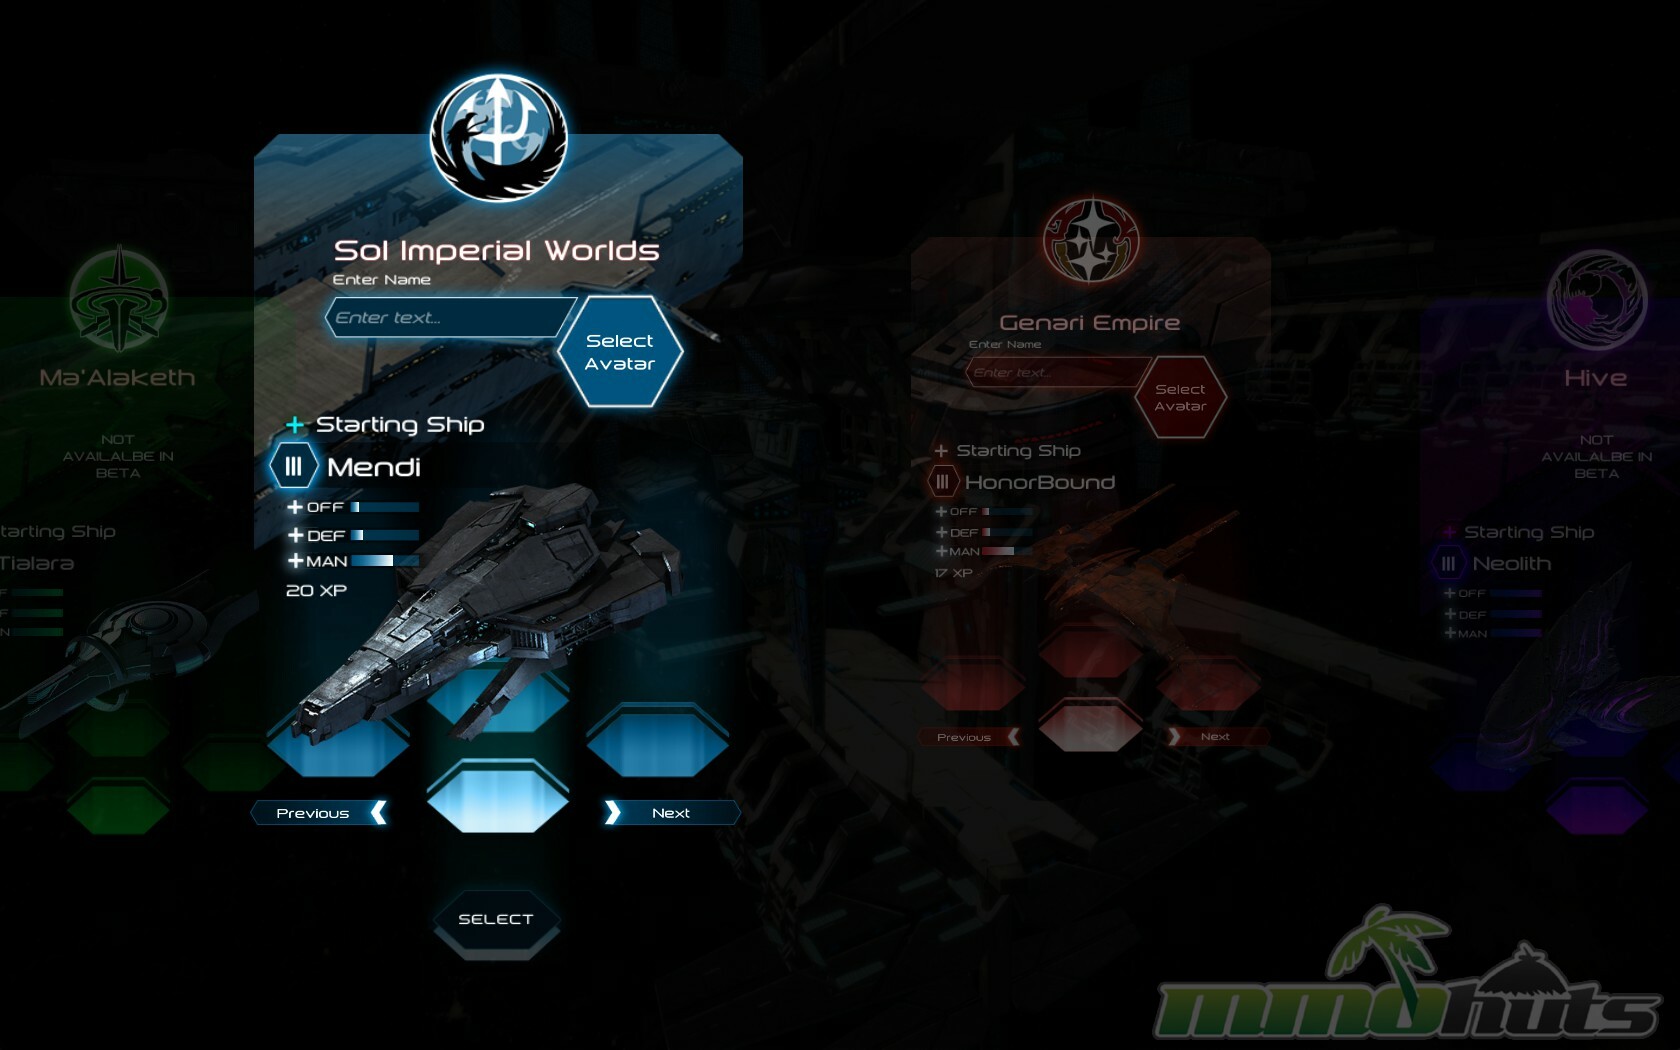 Space Wars: Interstellar Empires on Steam